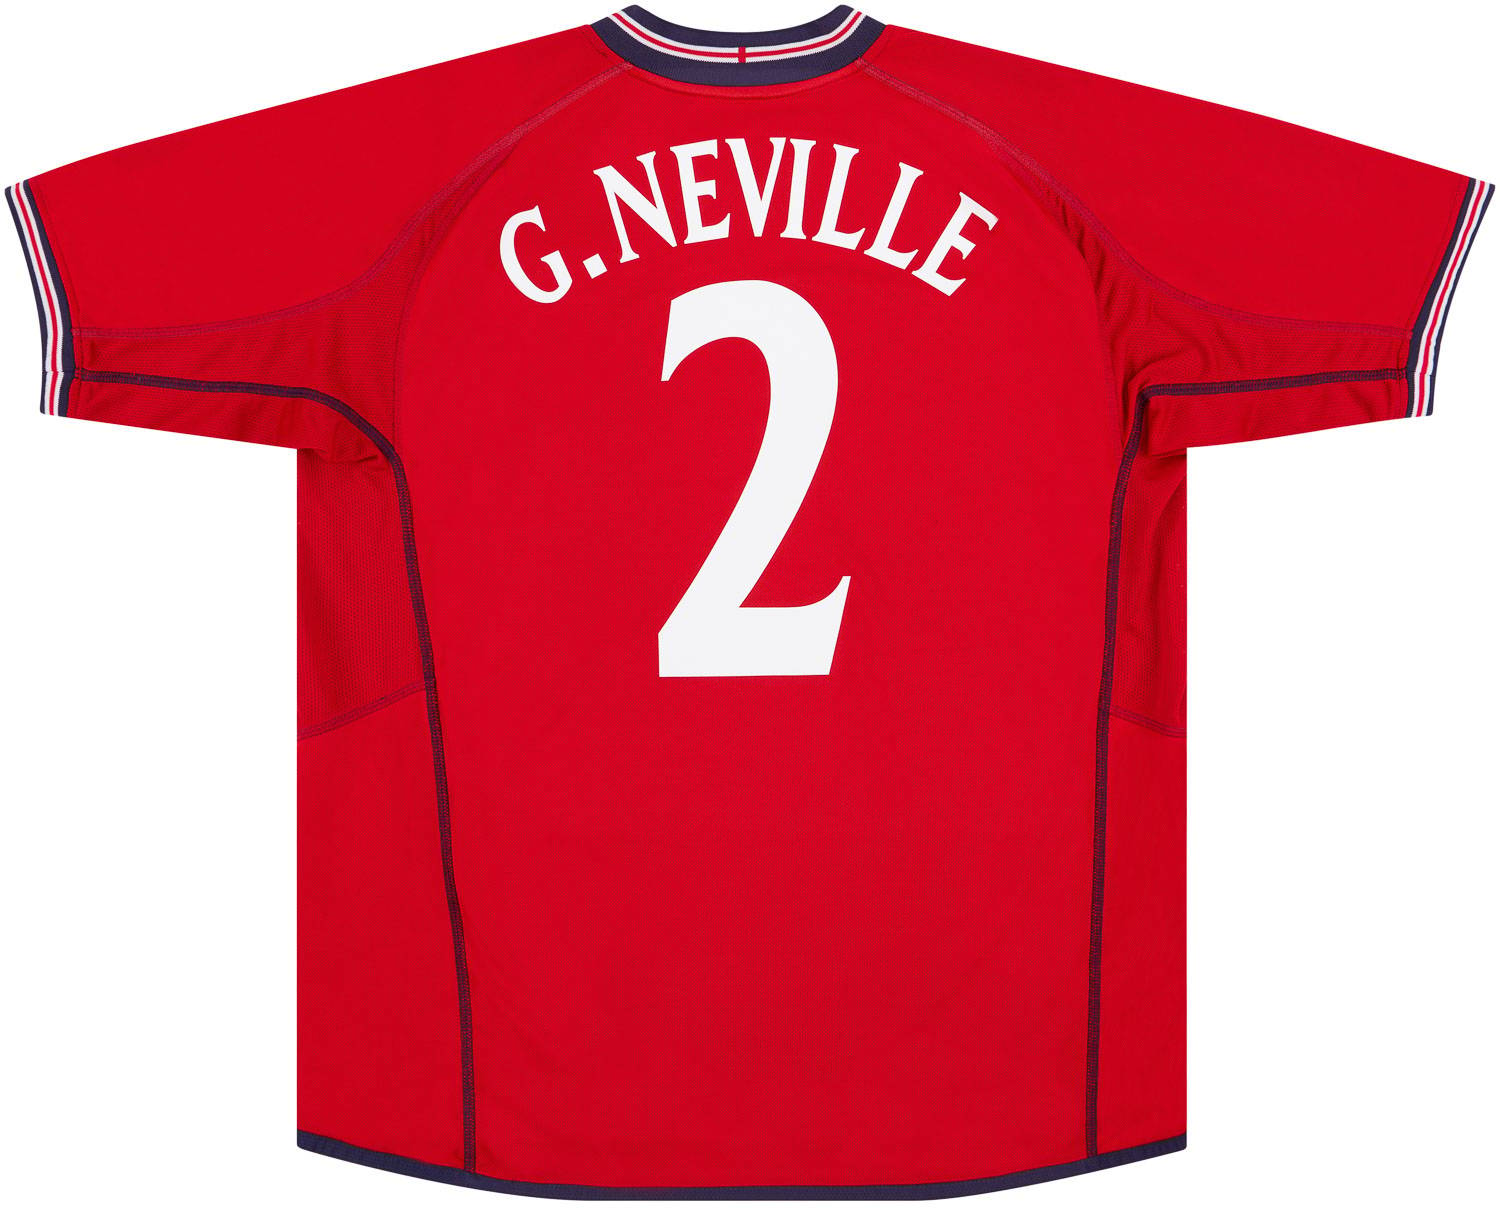 2002-04 England Away Shirt G.Neville #2 - 9/10